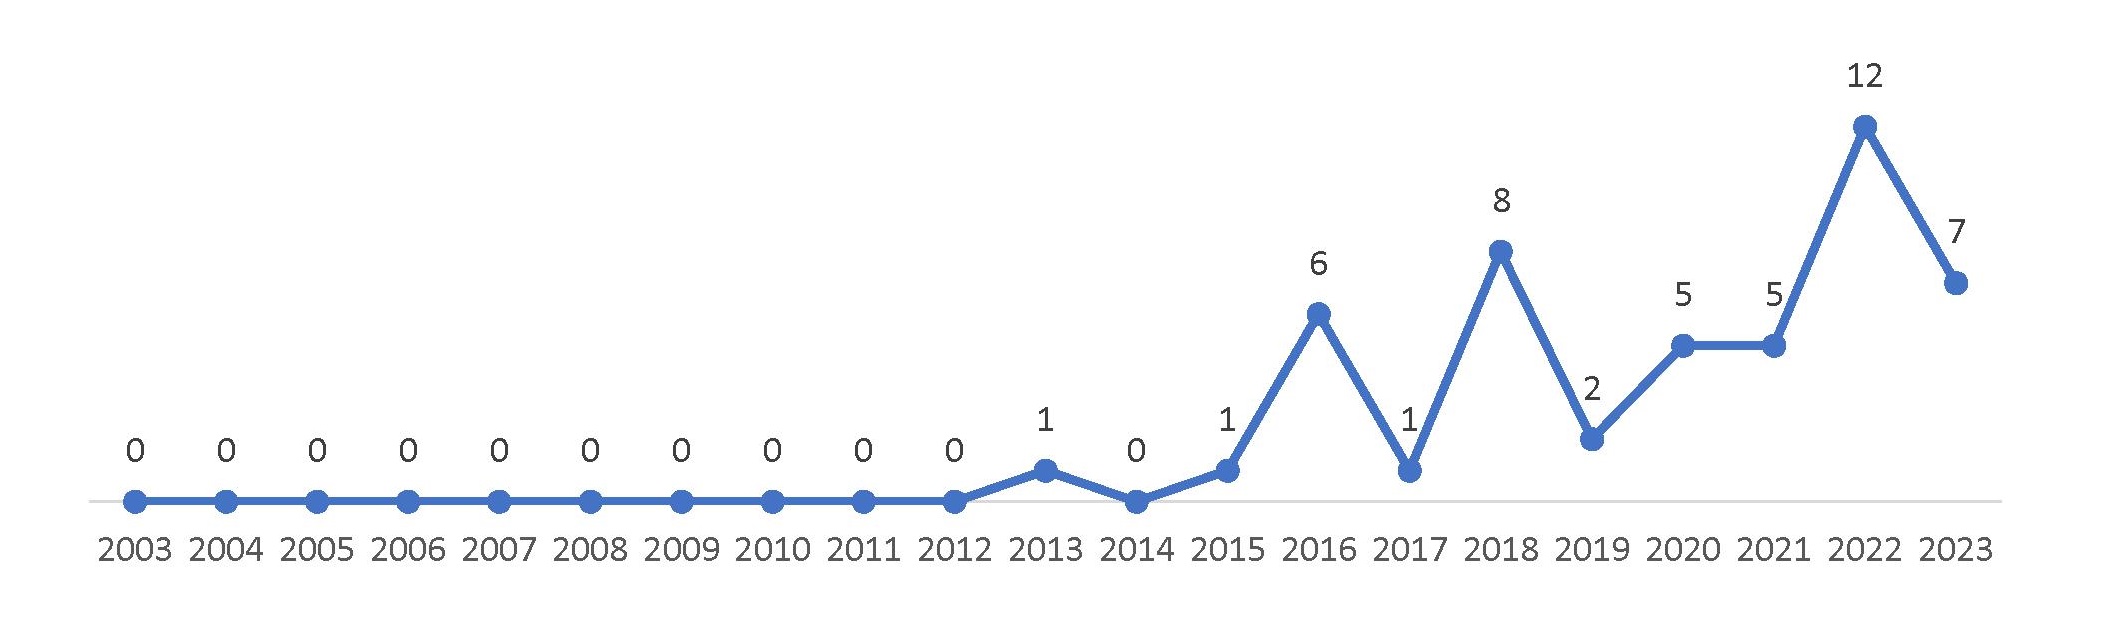 Рисунок 7 – Распределение количества патентных публикаций PowerLight Technologies по годам в период с 2003 г. по 01.10.2023 г.